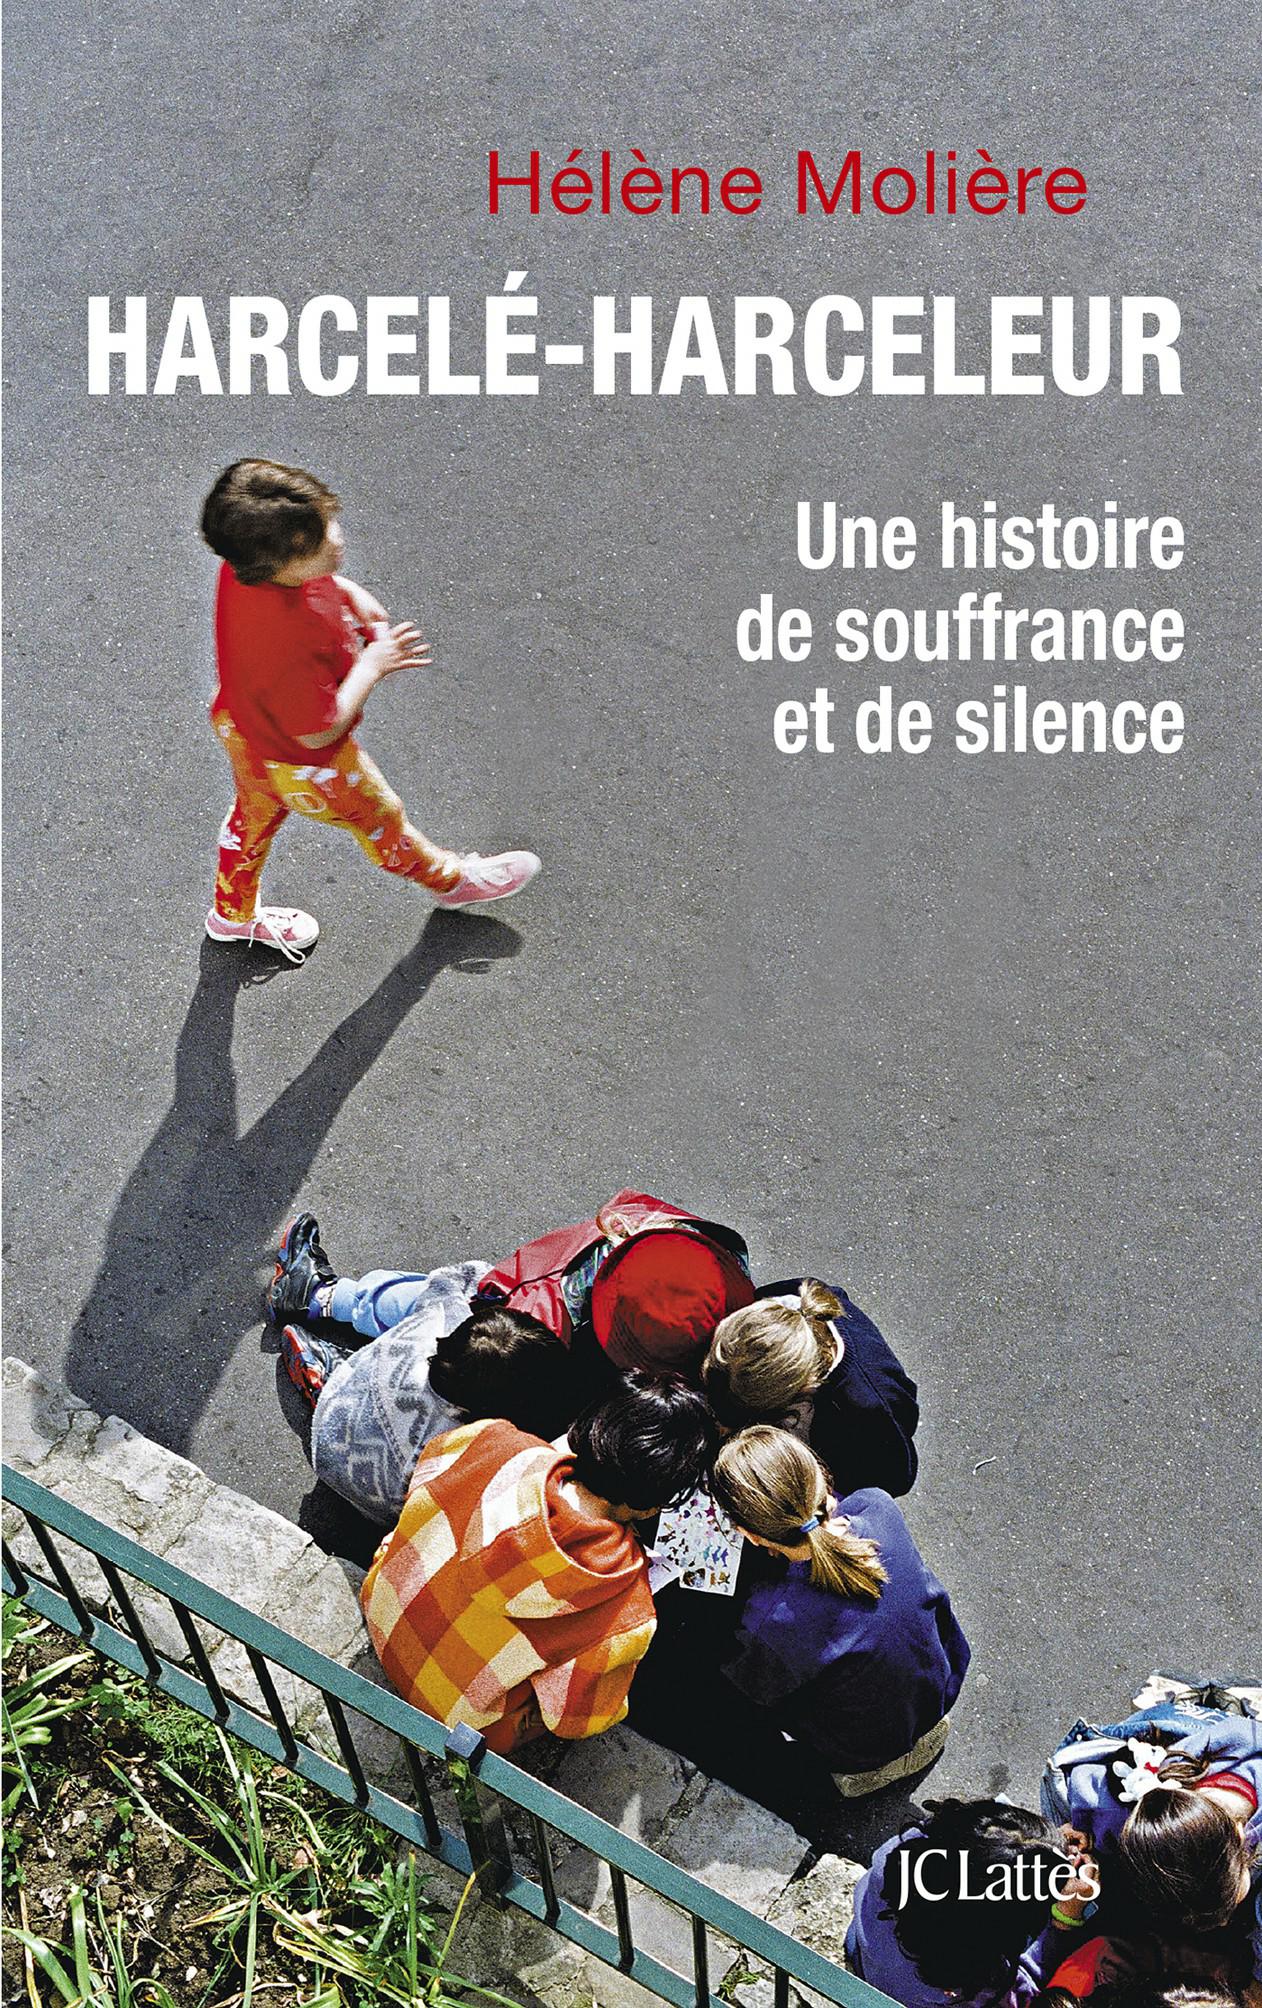 Harcelé-harceleur : Une histoire de souffrance et de silence. Hélène Molière